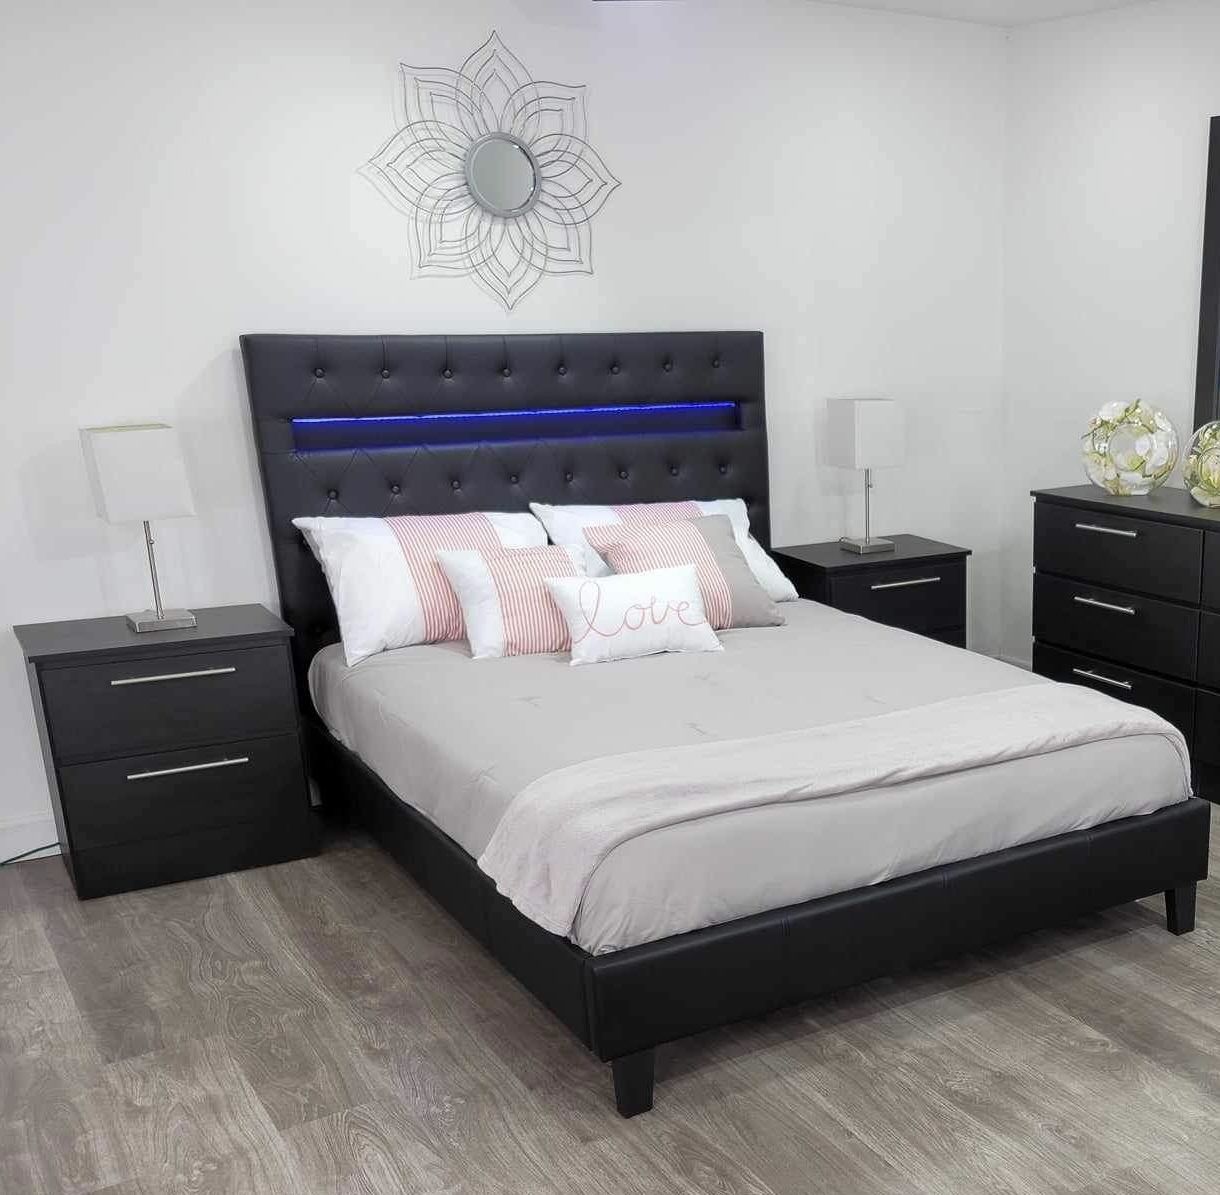 Brand New Bedroom Set with Mattress / Juego de Cuarto con Colchón Nuevo a Estrenar… Delivery 🚚 